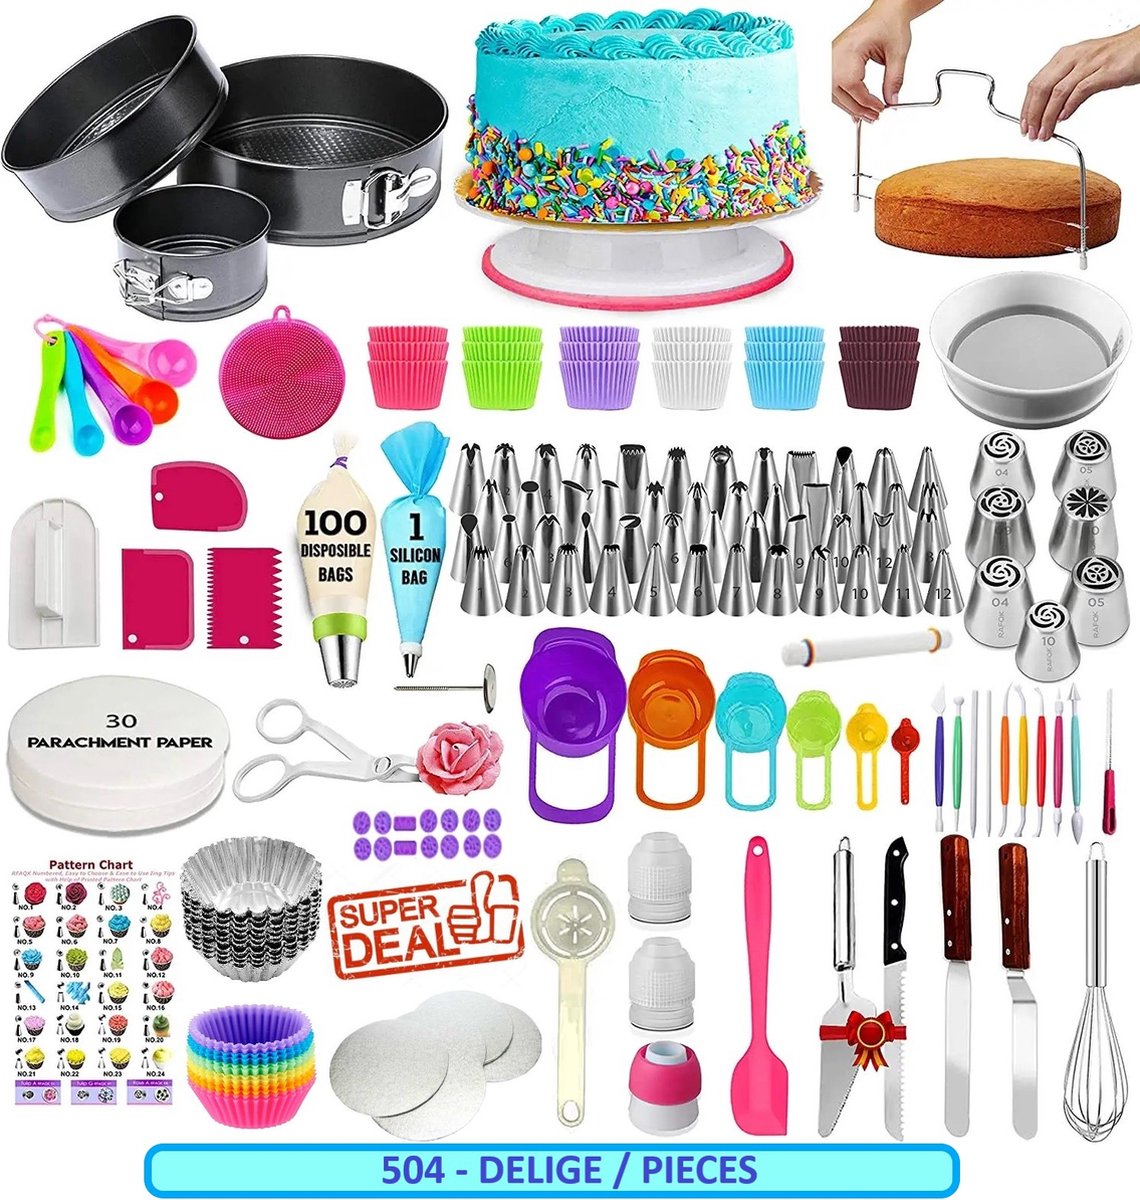 LivingHub 504 Delige Taart en Cake Decoratie Set - Taart Bakken Accessoires Set – Taartversiering - Draaiplateau - RVS Spuitmondjes